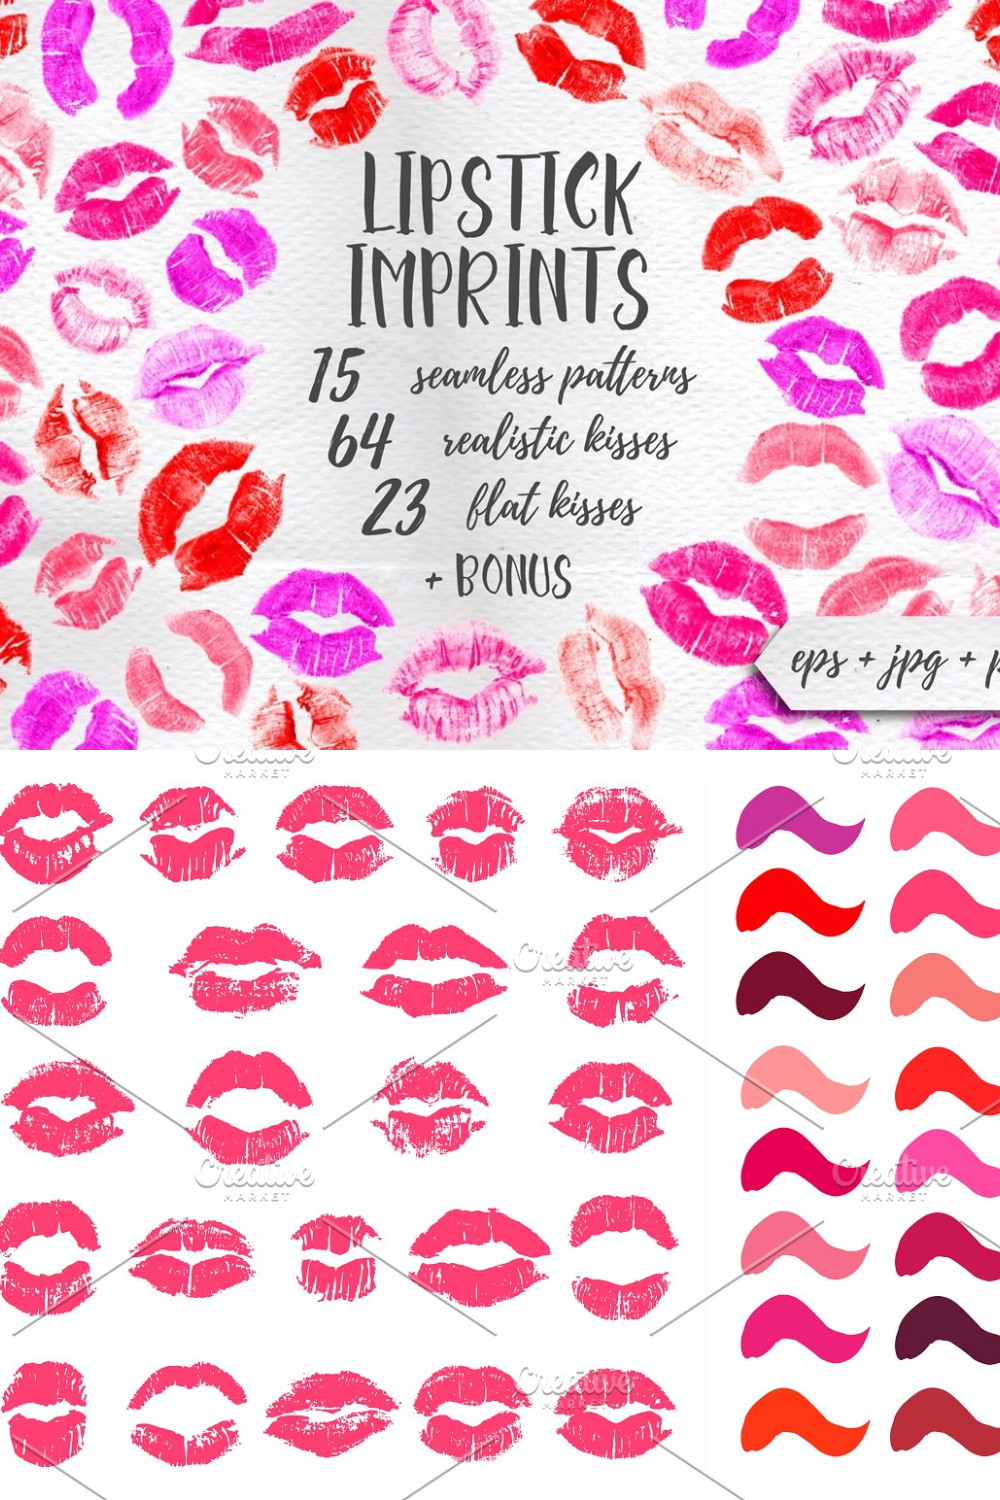 Lipstick Kisses - Pinterest.